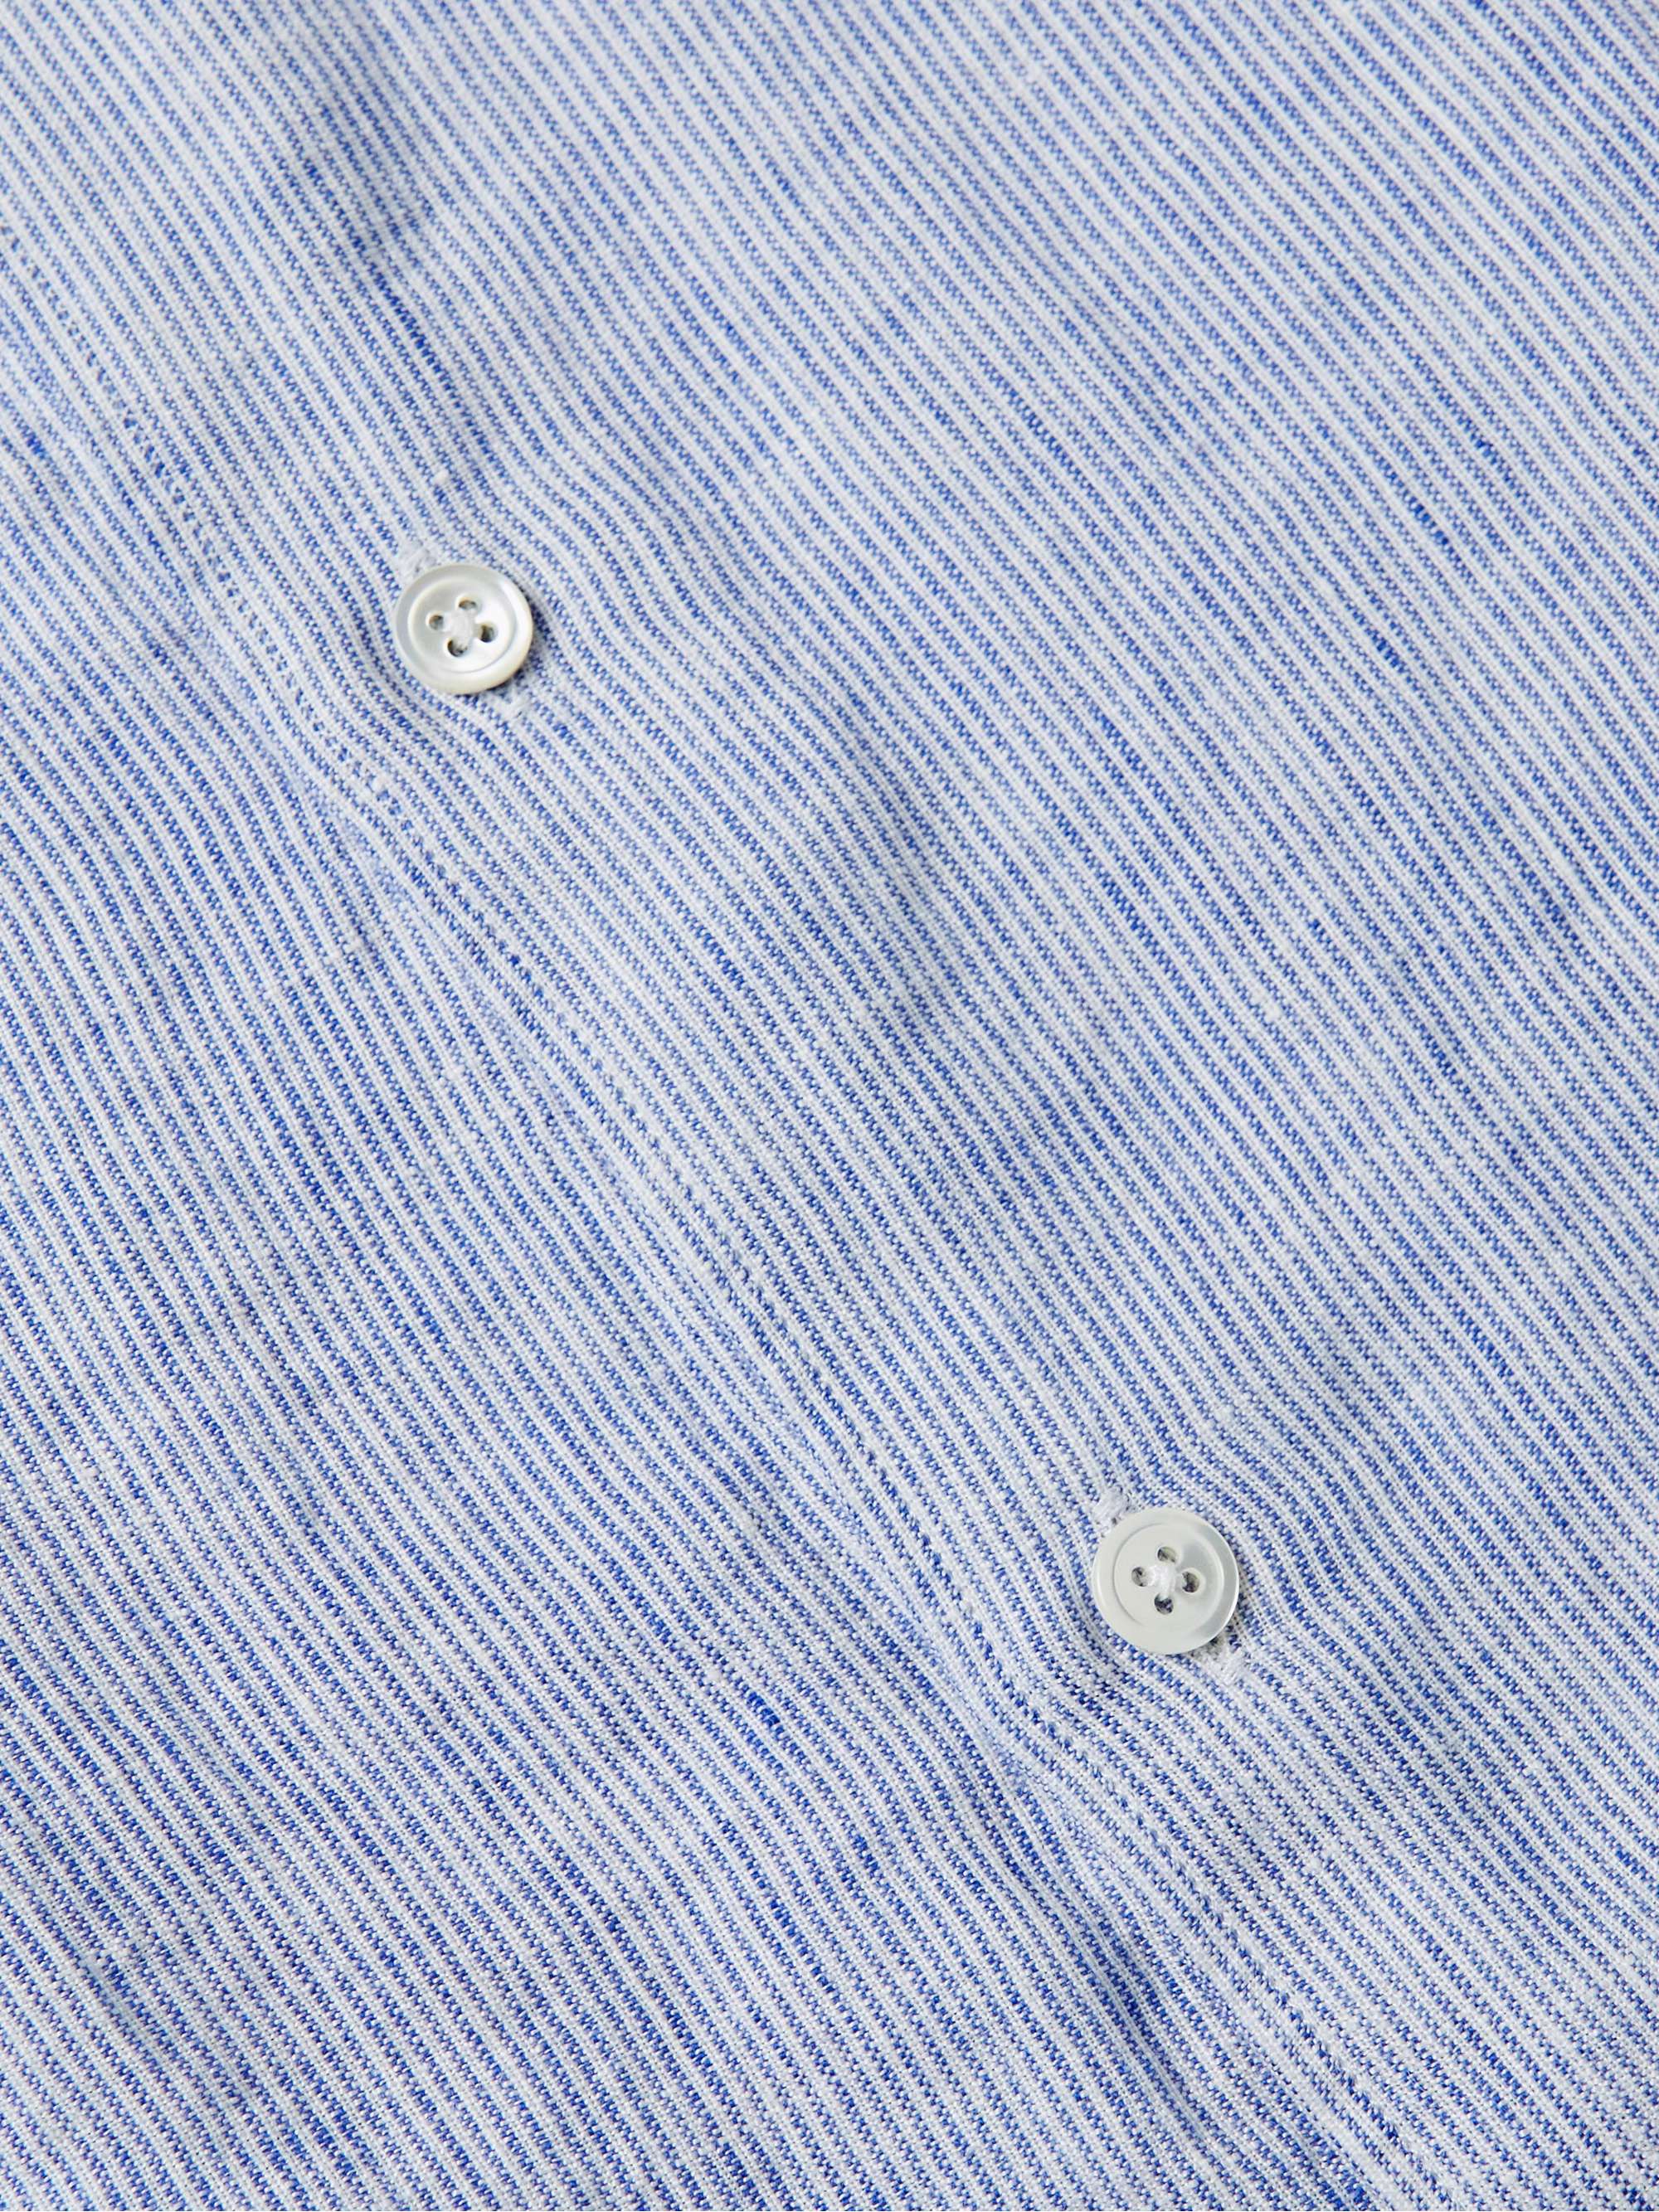 HARTFORD Grandad-Collar Pinstriped Linen Shirt